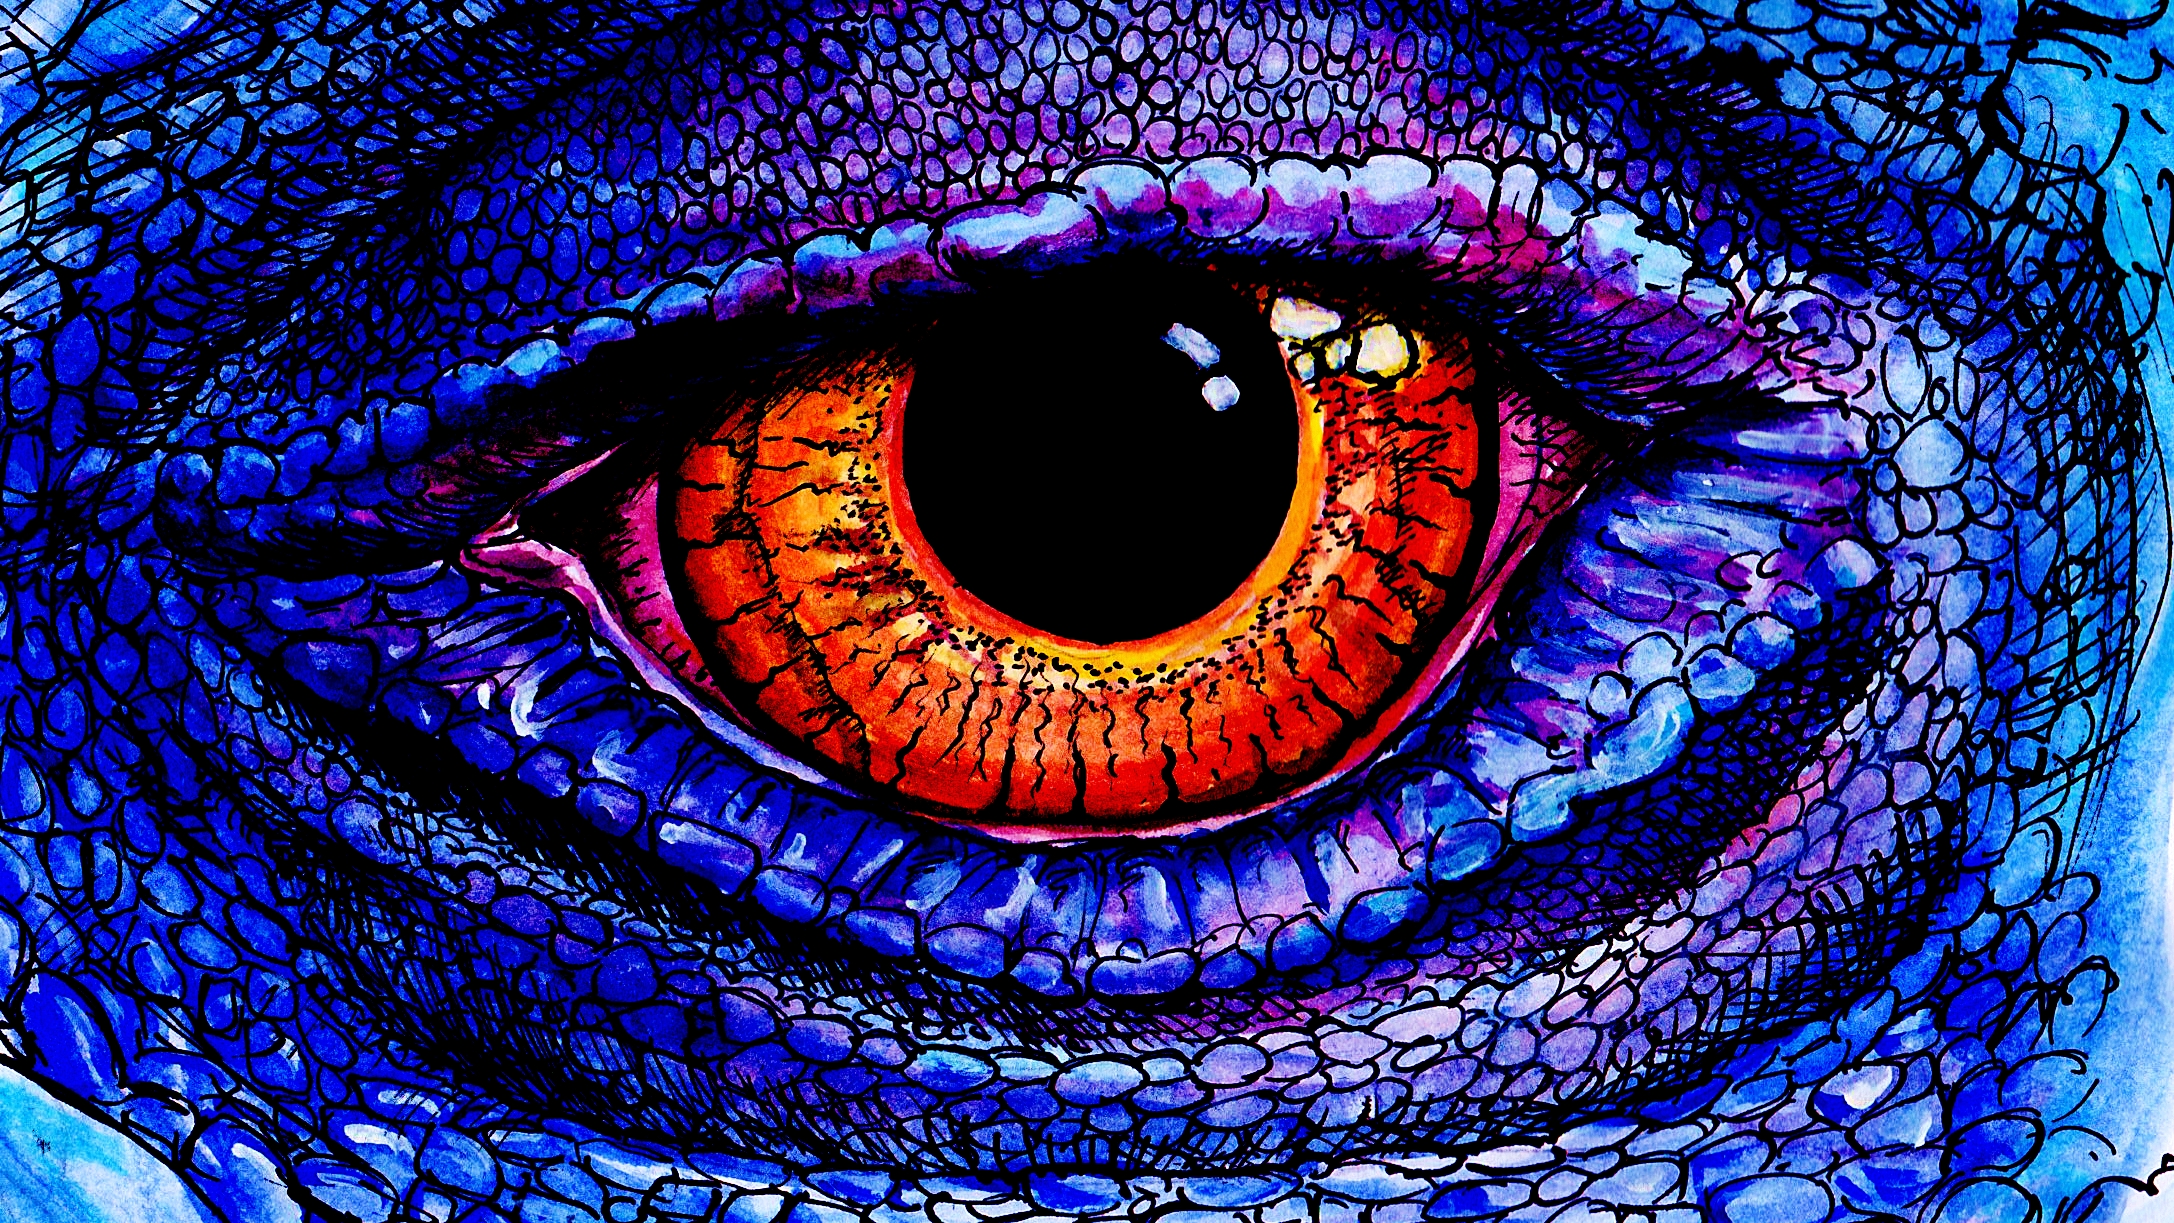 Dragon Eye by FRoedo on DeviantArt